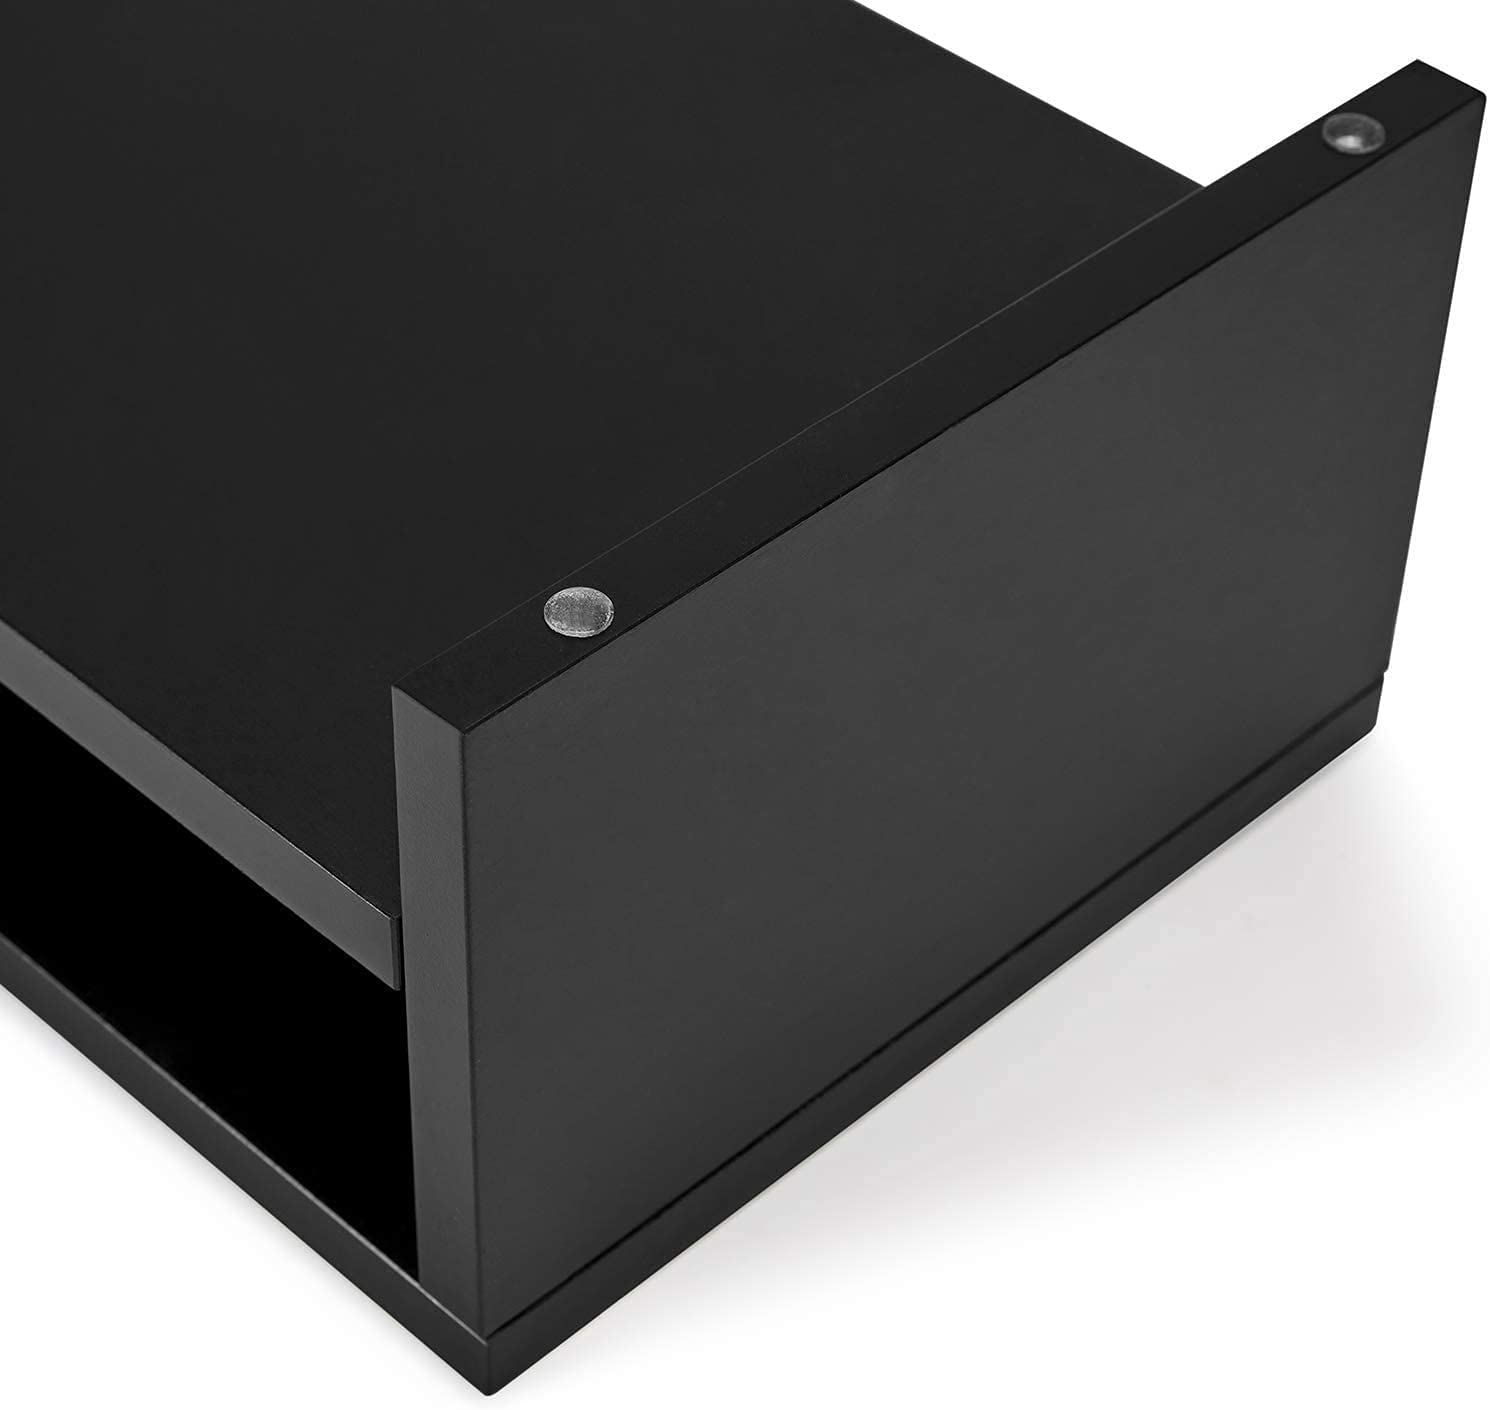 Computer Monitor Stand Riser 2-Tier Wood Storage Organizer.  (Black)